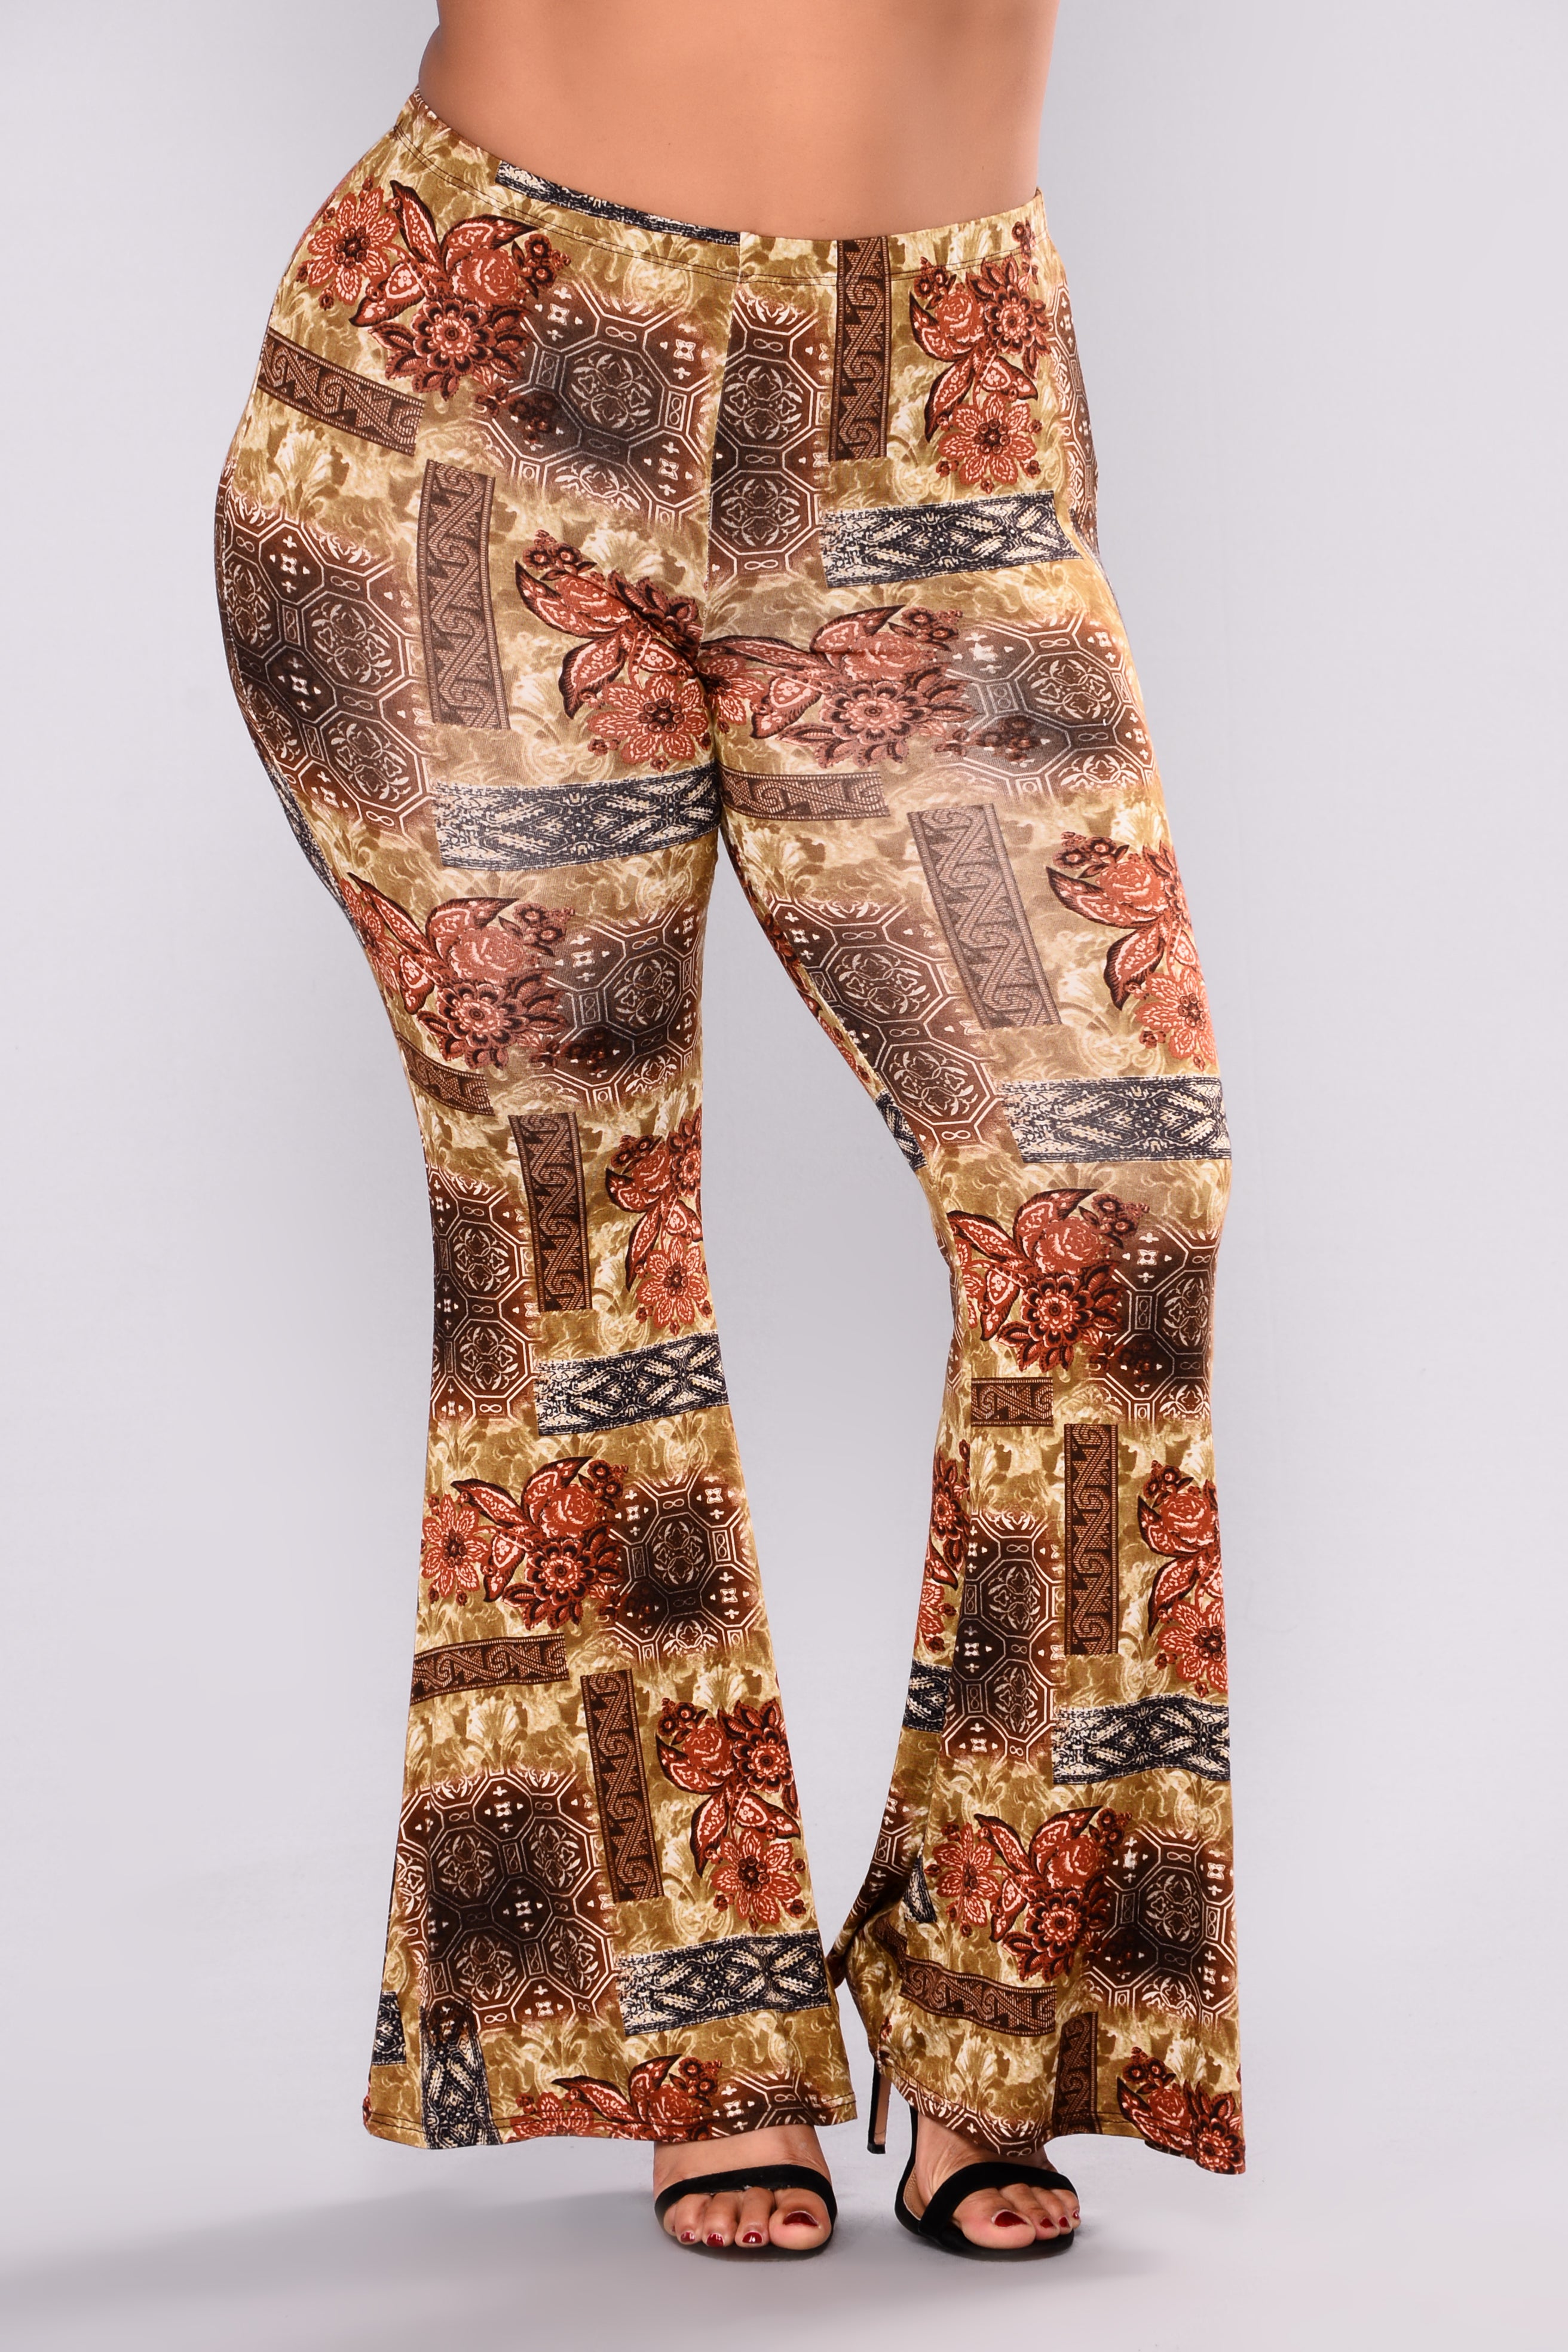 Torn Apart Print Pants - Rust Multi – Fashion Nova